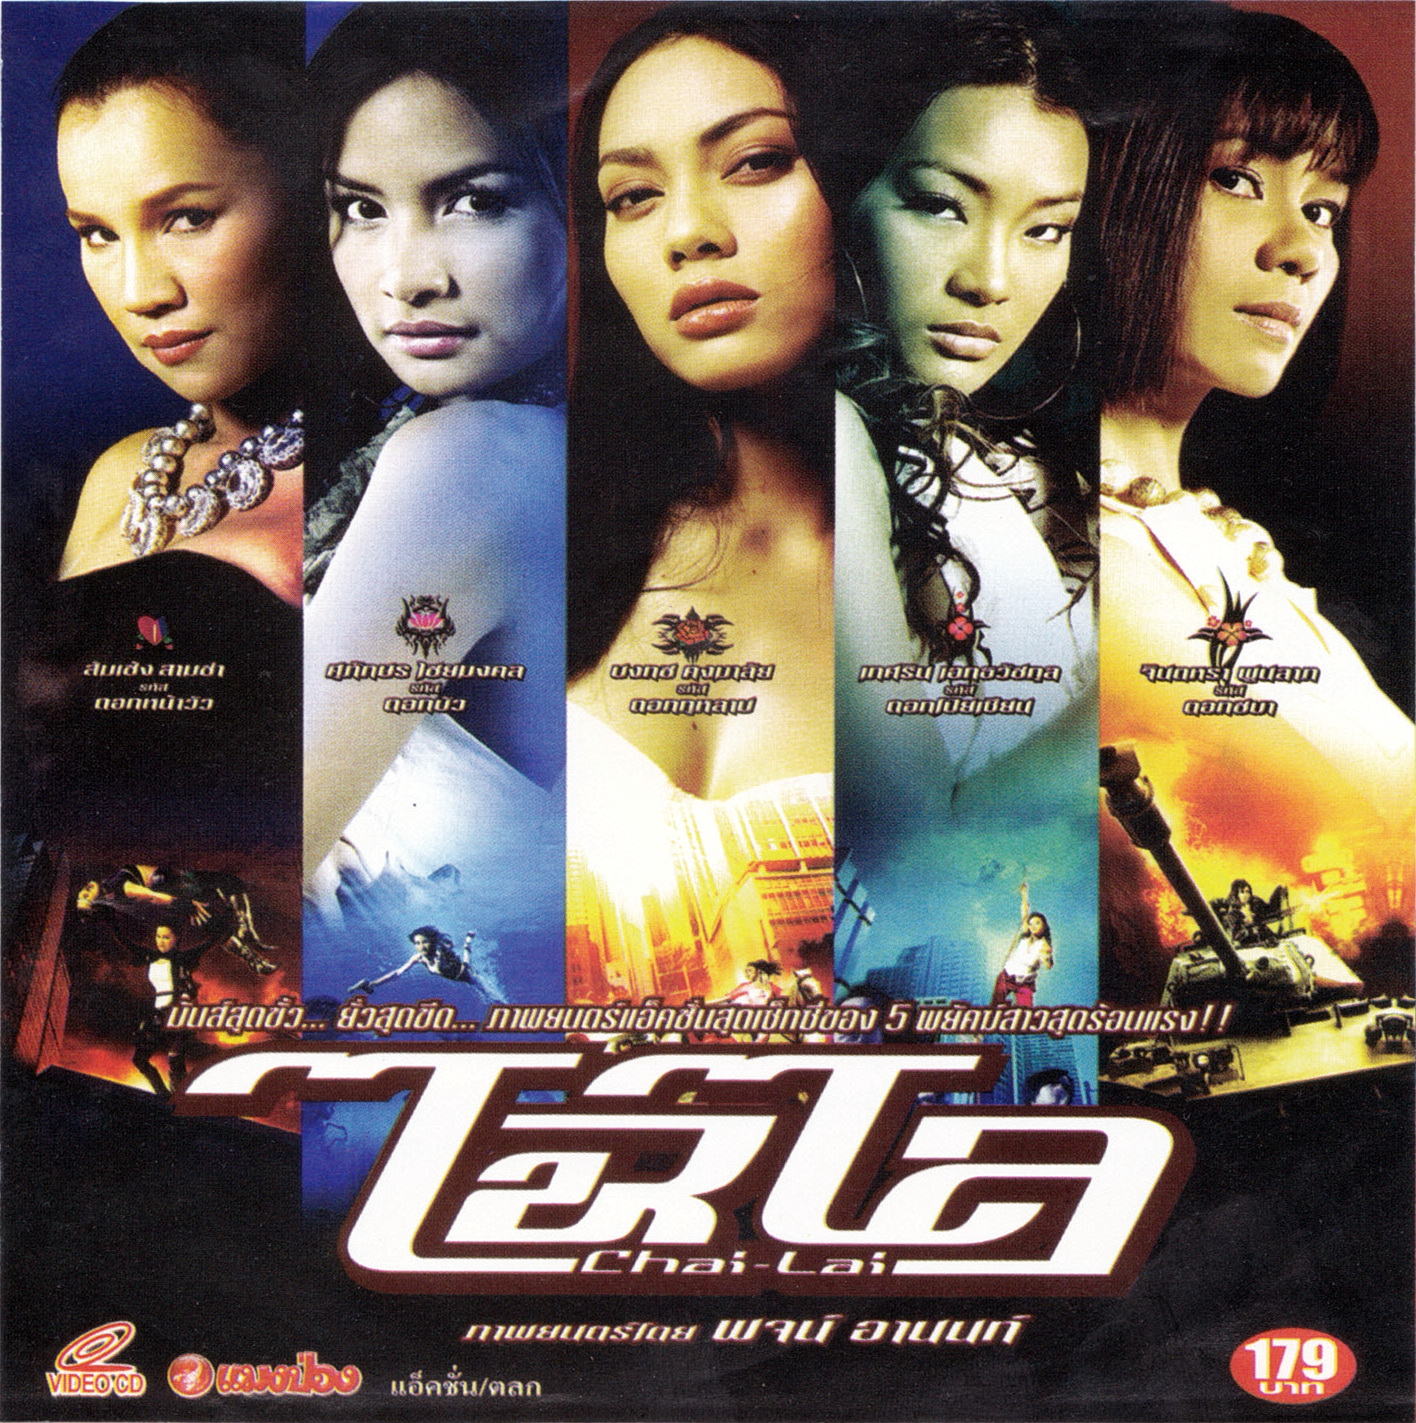 Chai lai (2006) Screenshot 1